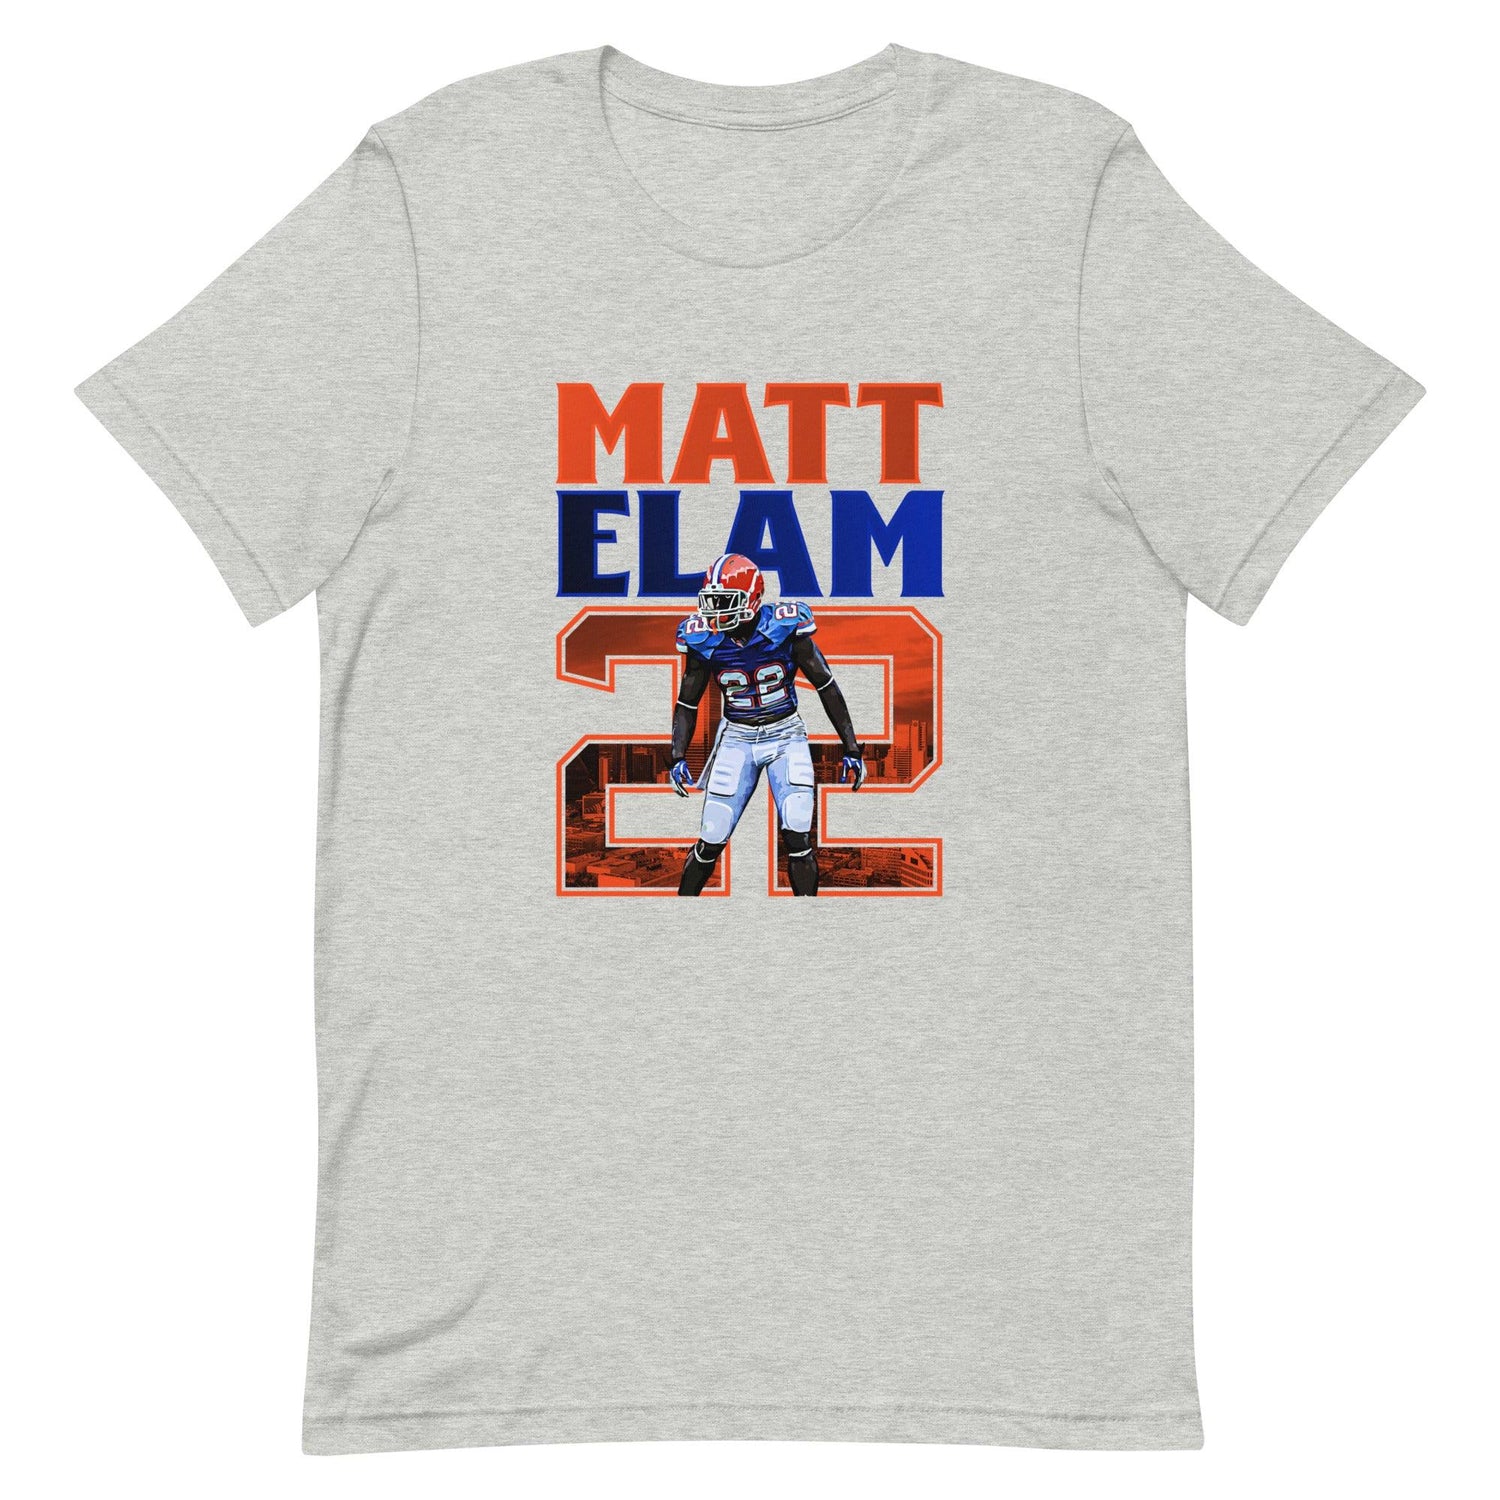 Matt Elam "Gameday" t-shirt - Fan Arch